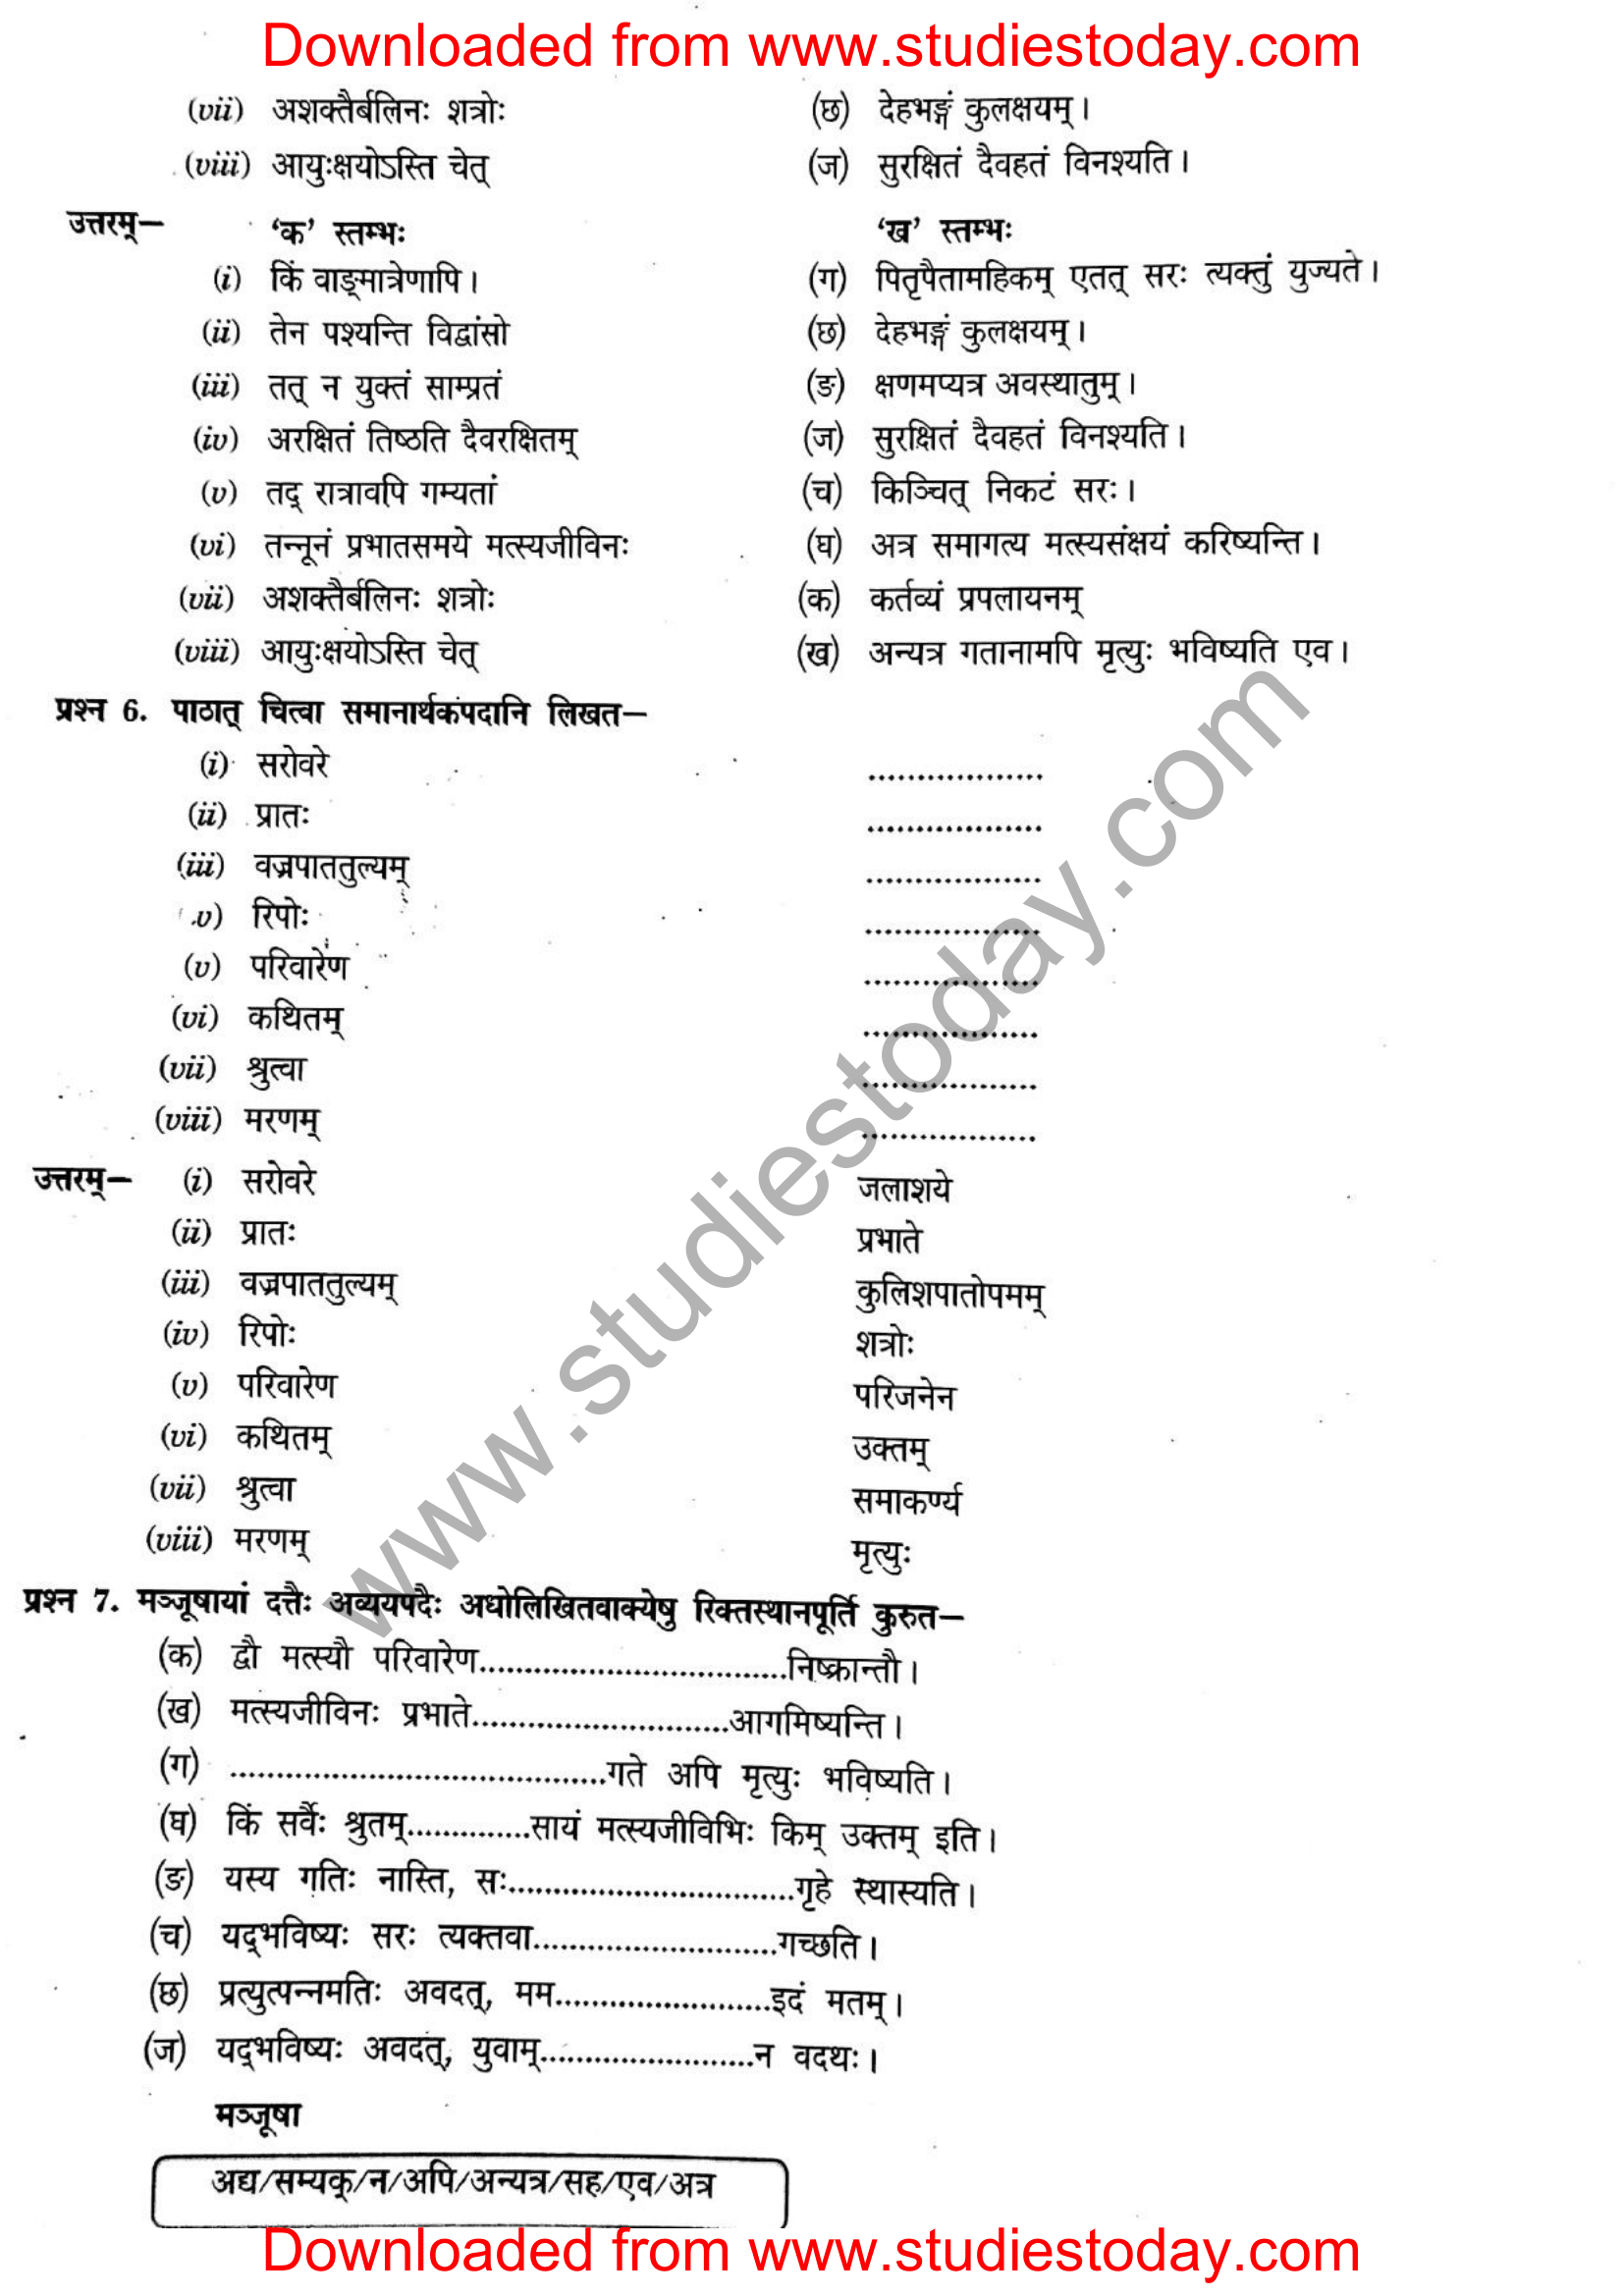 ncert-solutions-class-12-sanskrit-ritikia-chapter-4-08